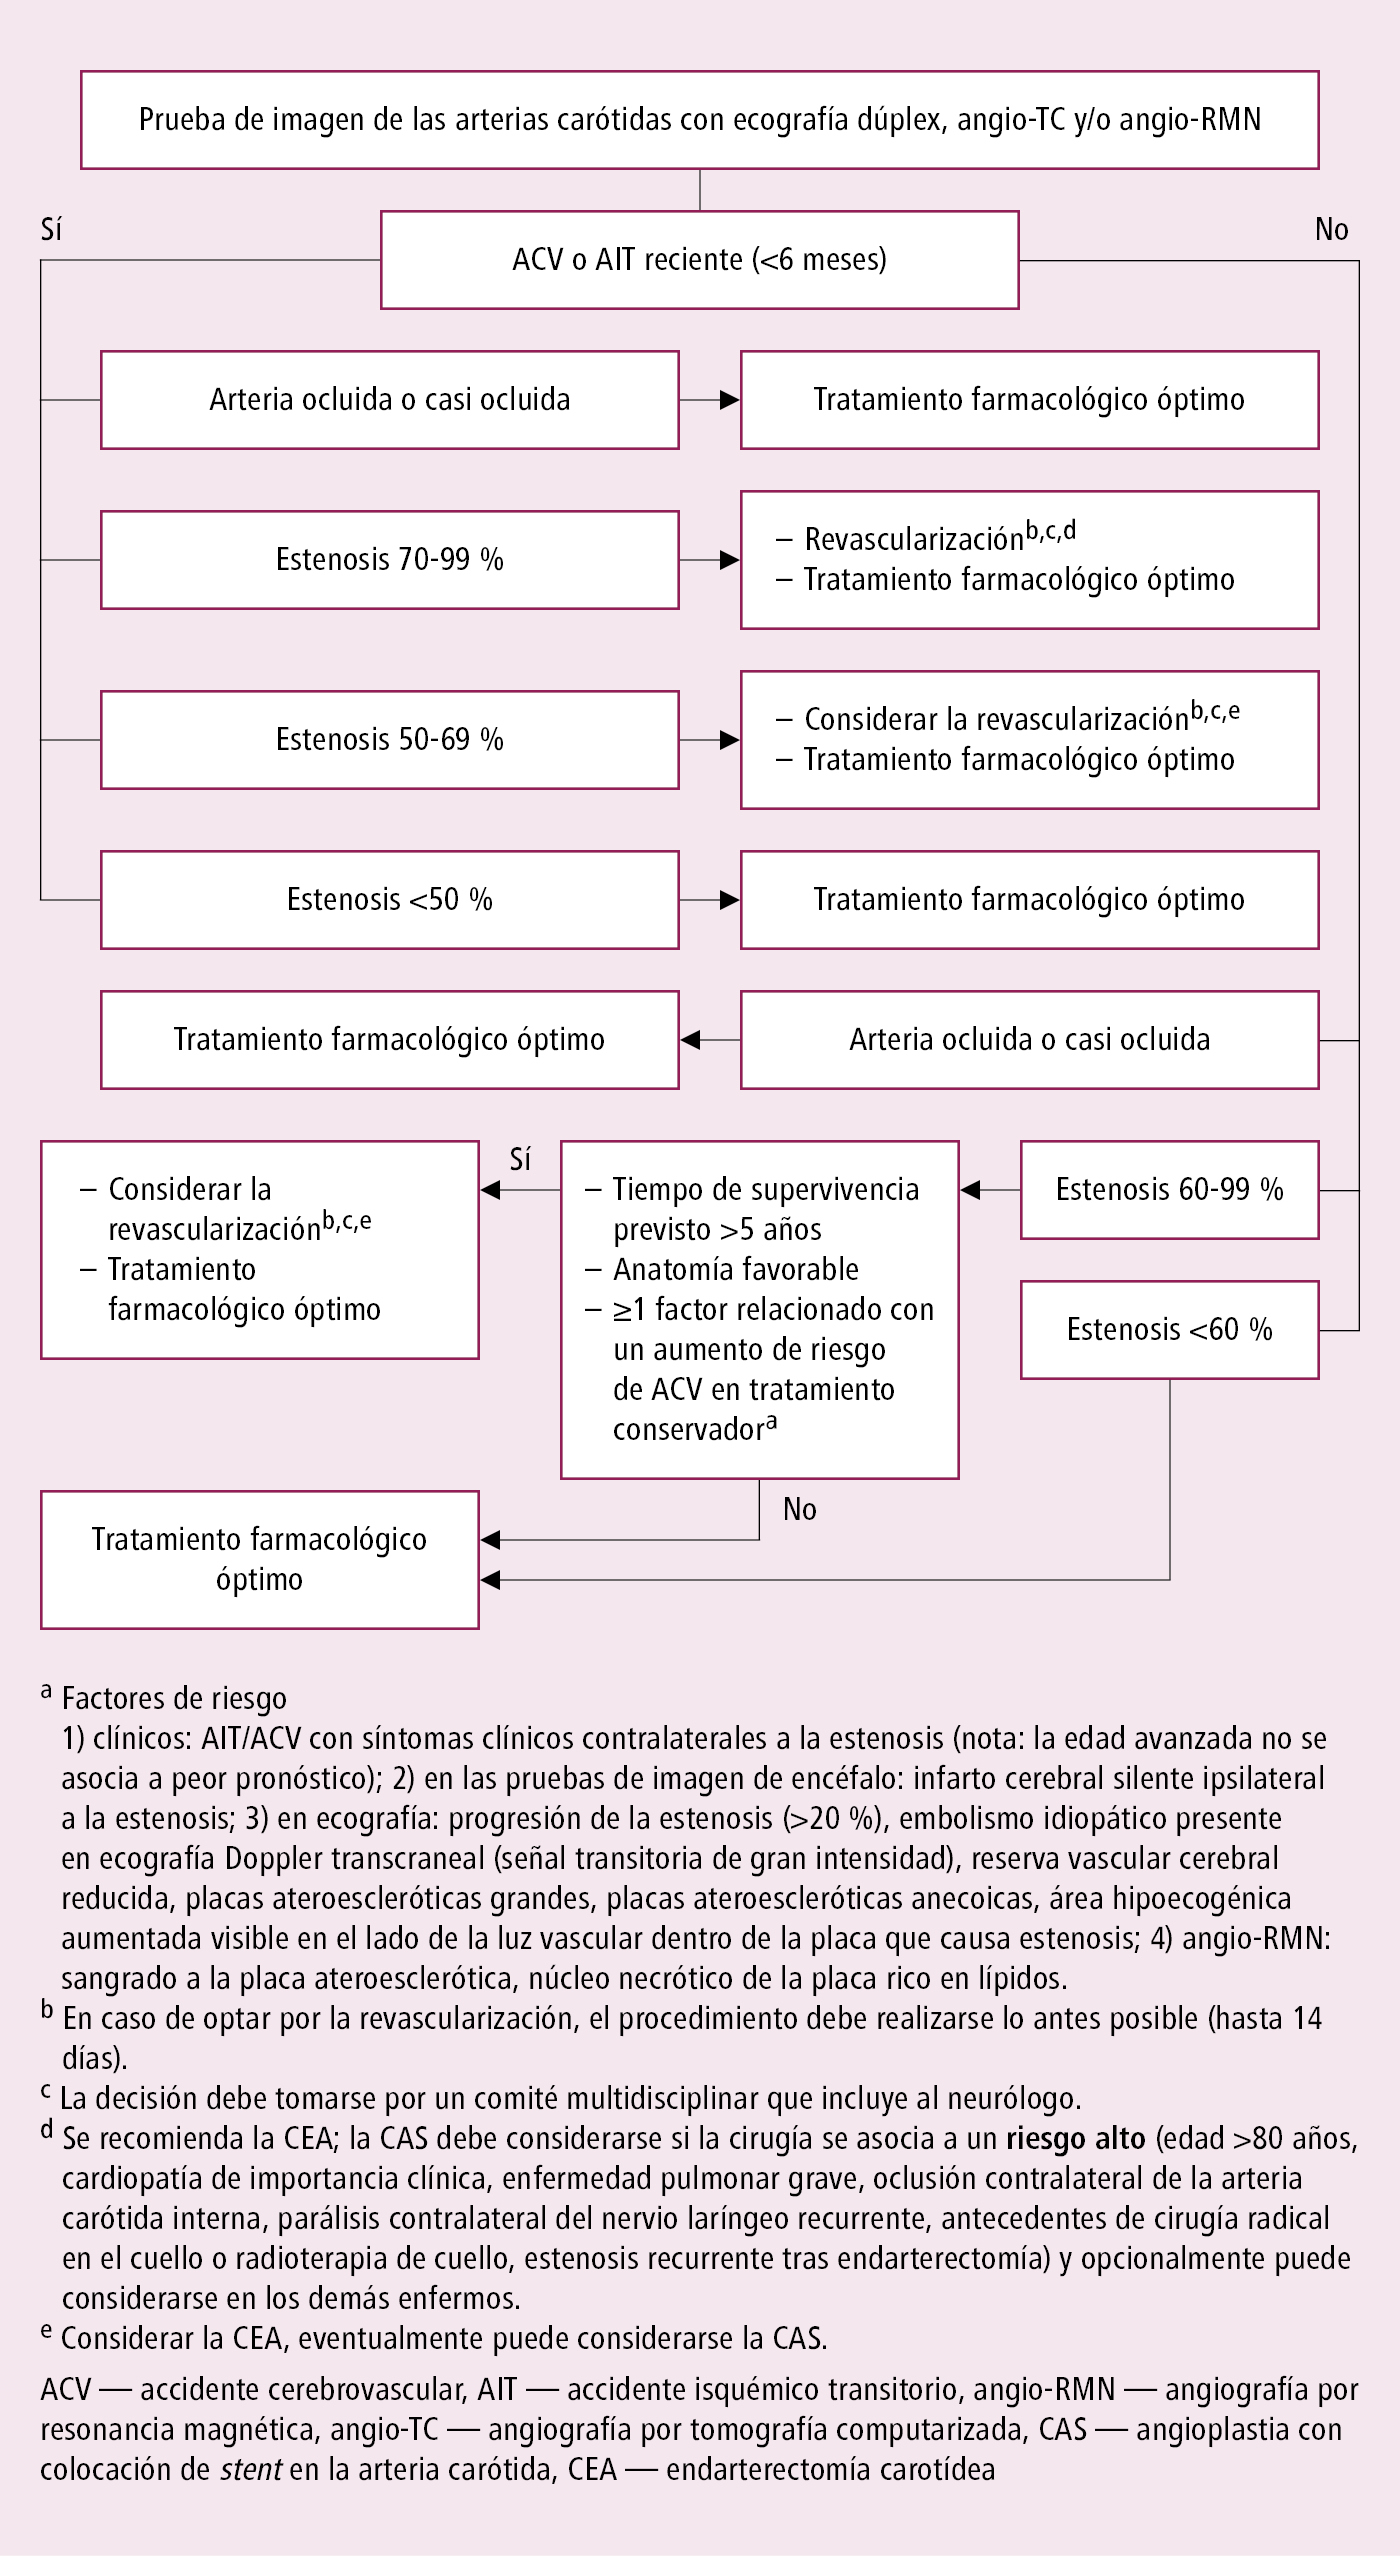    Fig. 2.28-1.  Algoritmo de manejo de la estenosis de las arterias carótidas (según las guías de la ESC y ESVS 2017, modificado) 